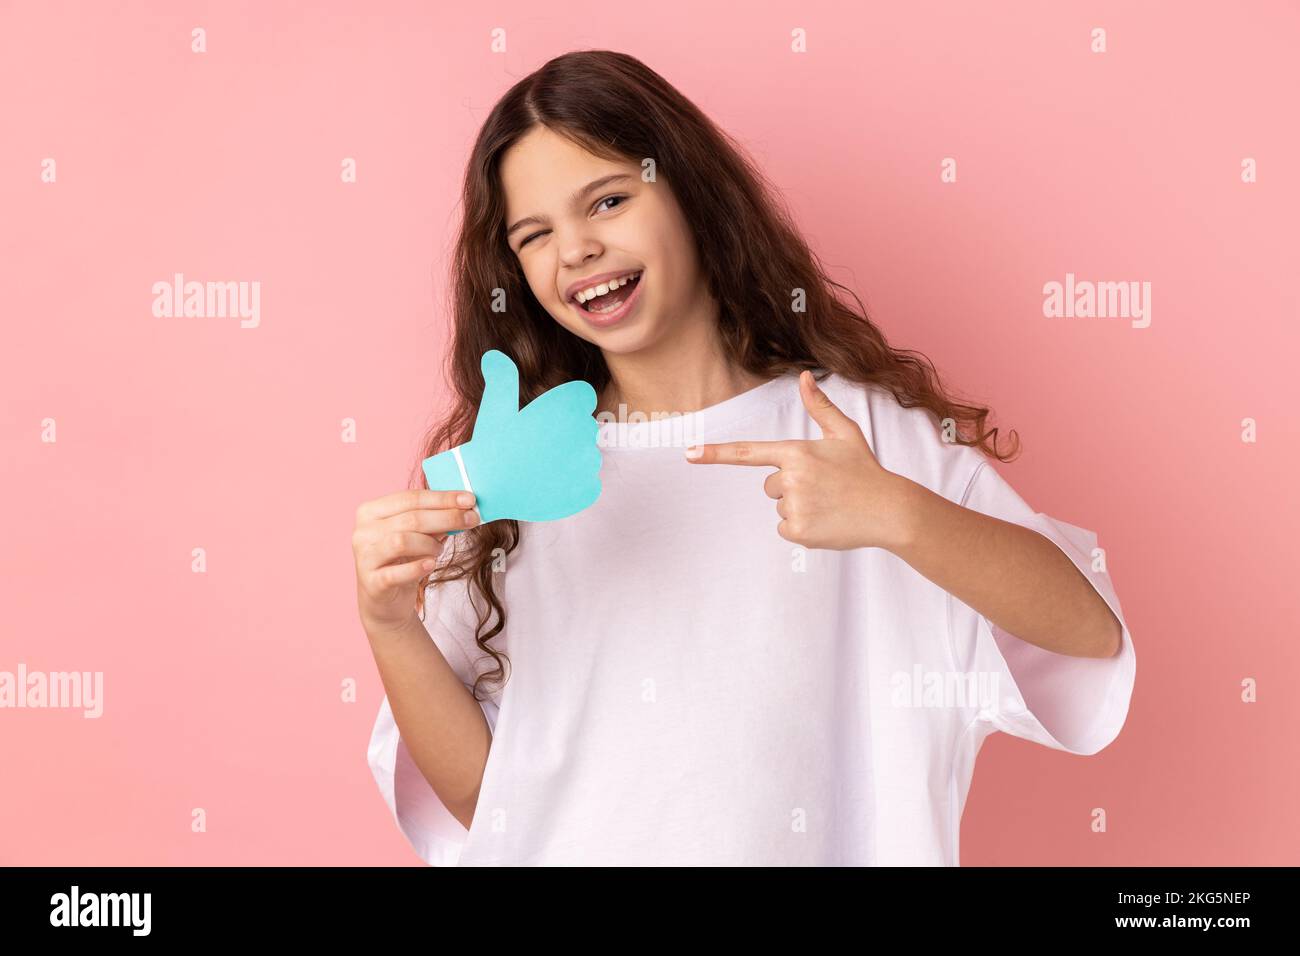 Porträt eines glücklichen, zufriedenen, bezaubernden kleinen Mädchens, das ein weißes T-Shirt trägt und auf ein Schild in Papierform zeigt oder Daumen nach oben zeigt. Studio-Aufnahme im Innenbereich isoliert auf pinkfarbenem Hintergrund. Stockfoto